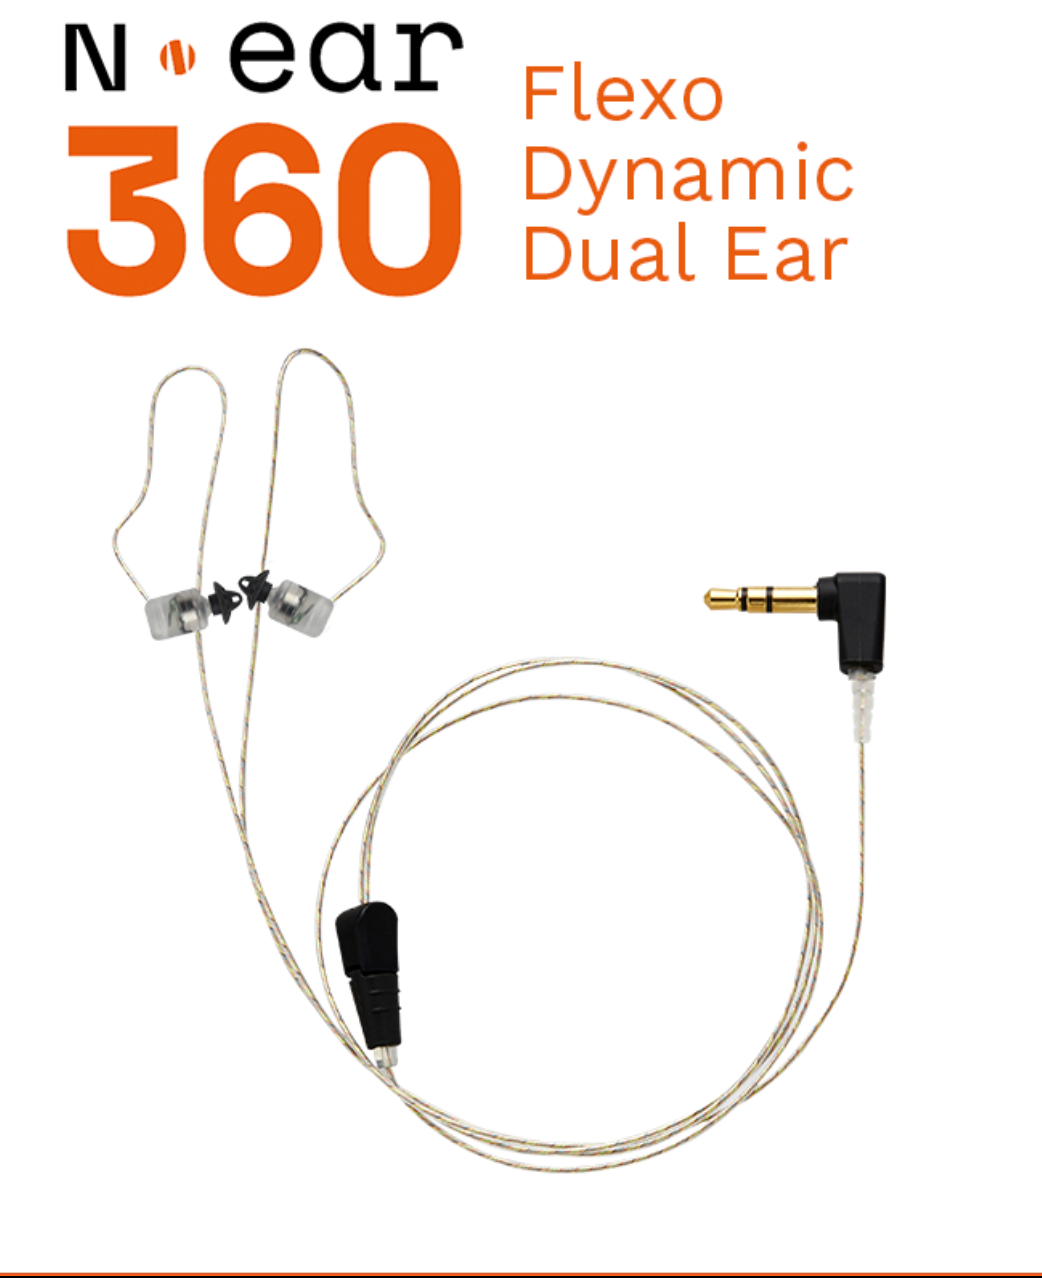 N-Ear 360 Flexo Dual Listen Only Earpiece